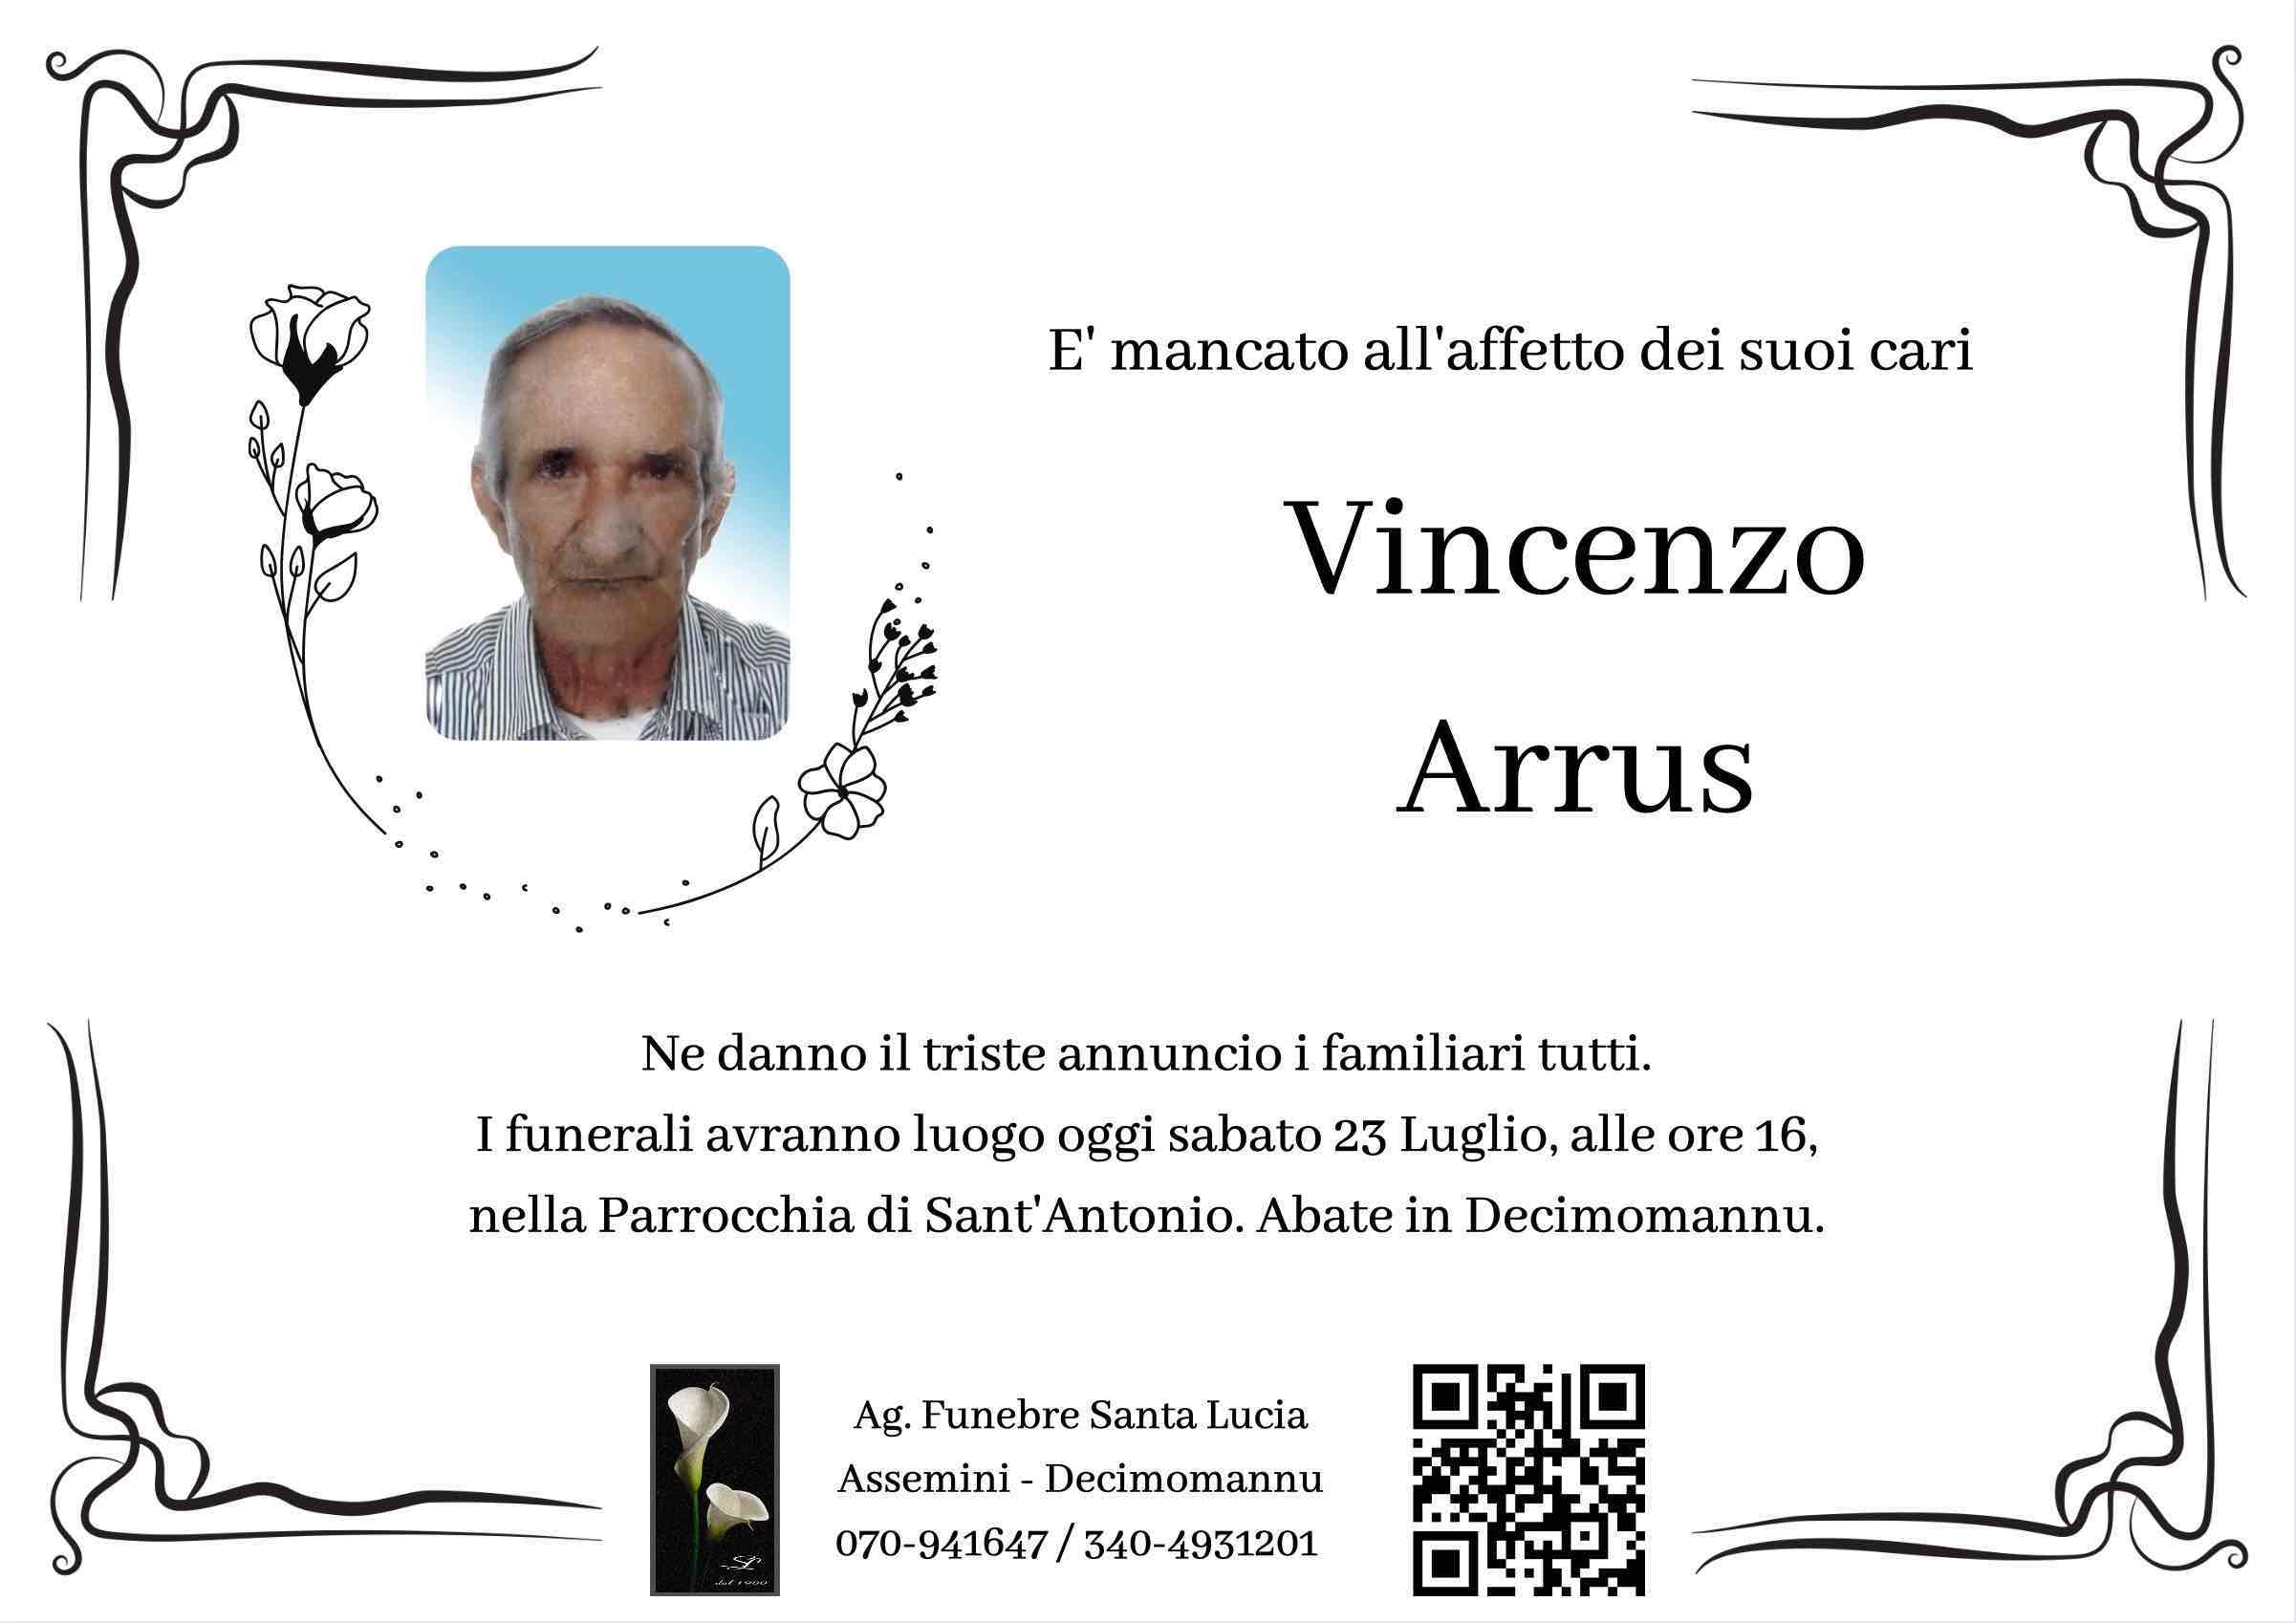 Vincenzo Arrus